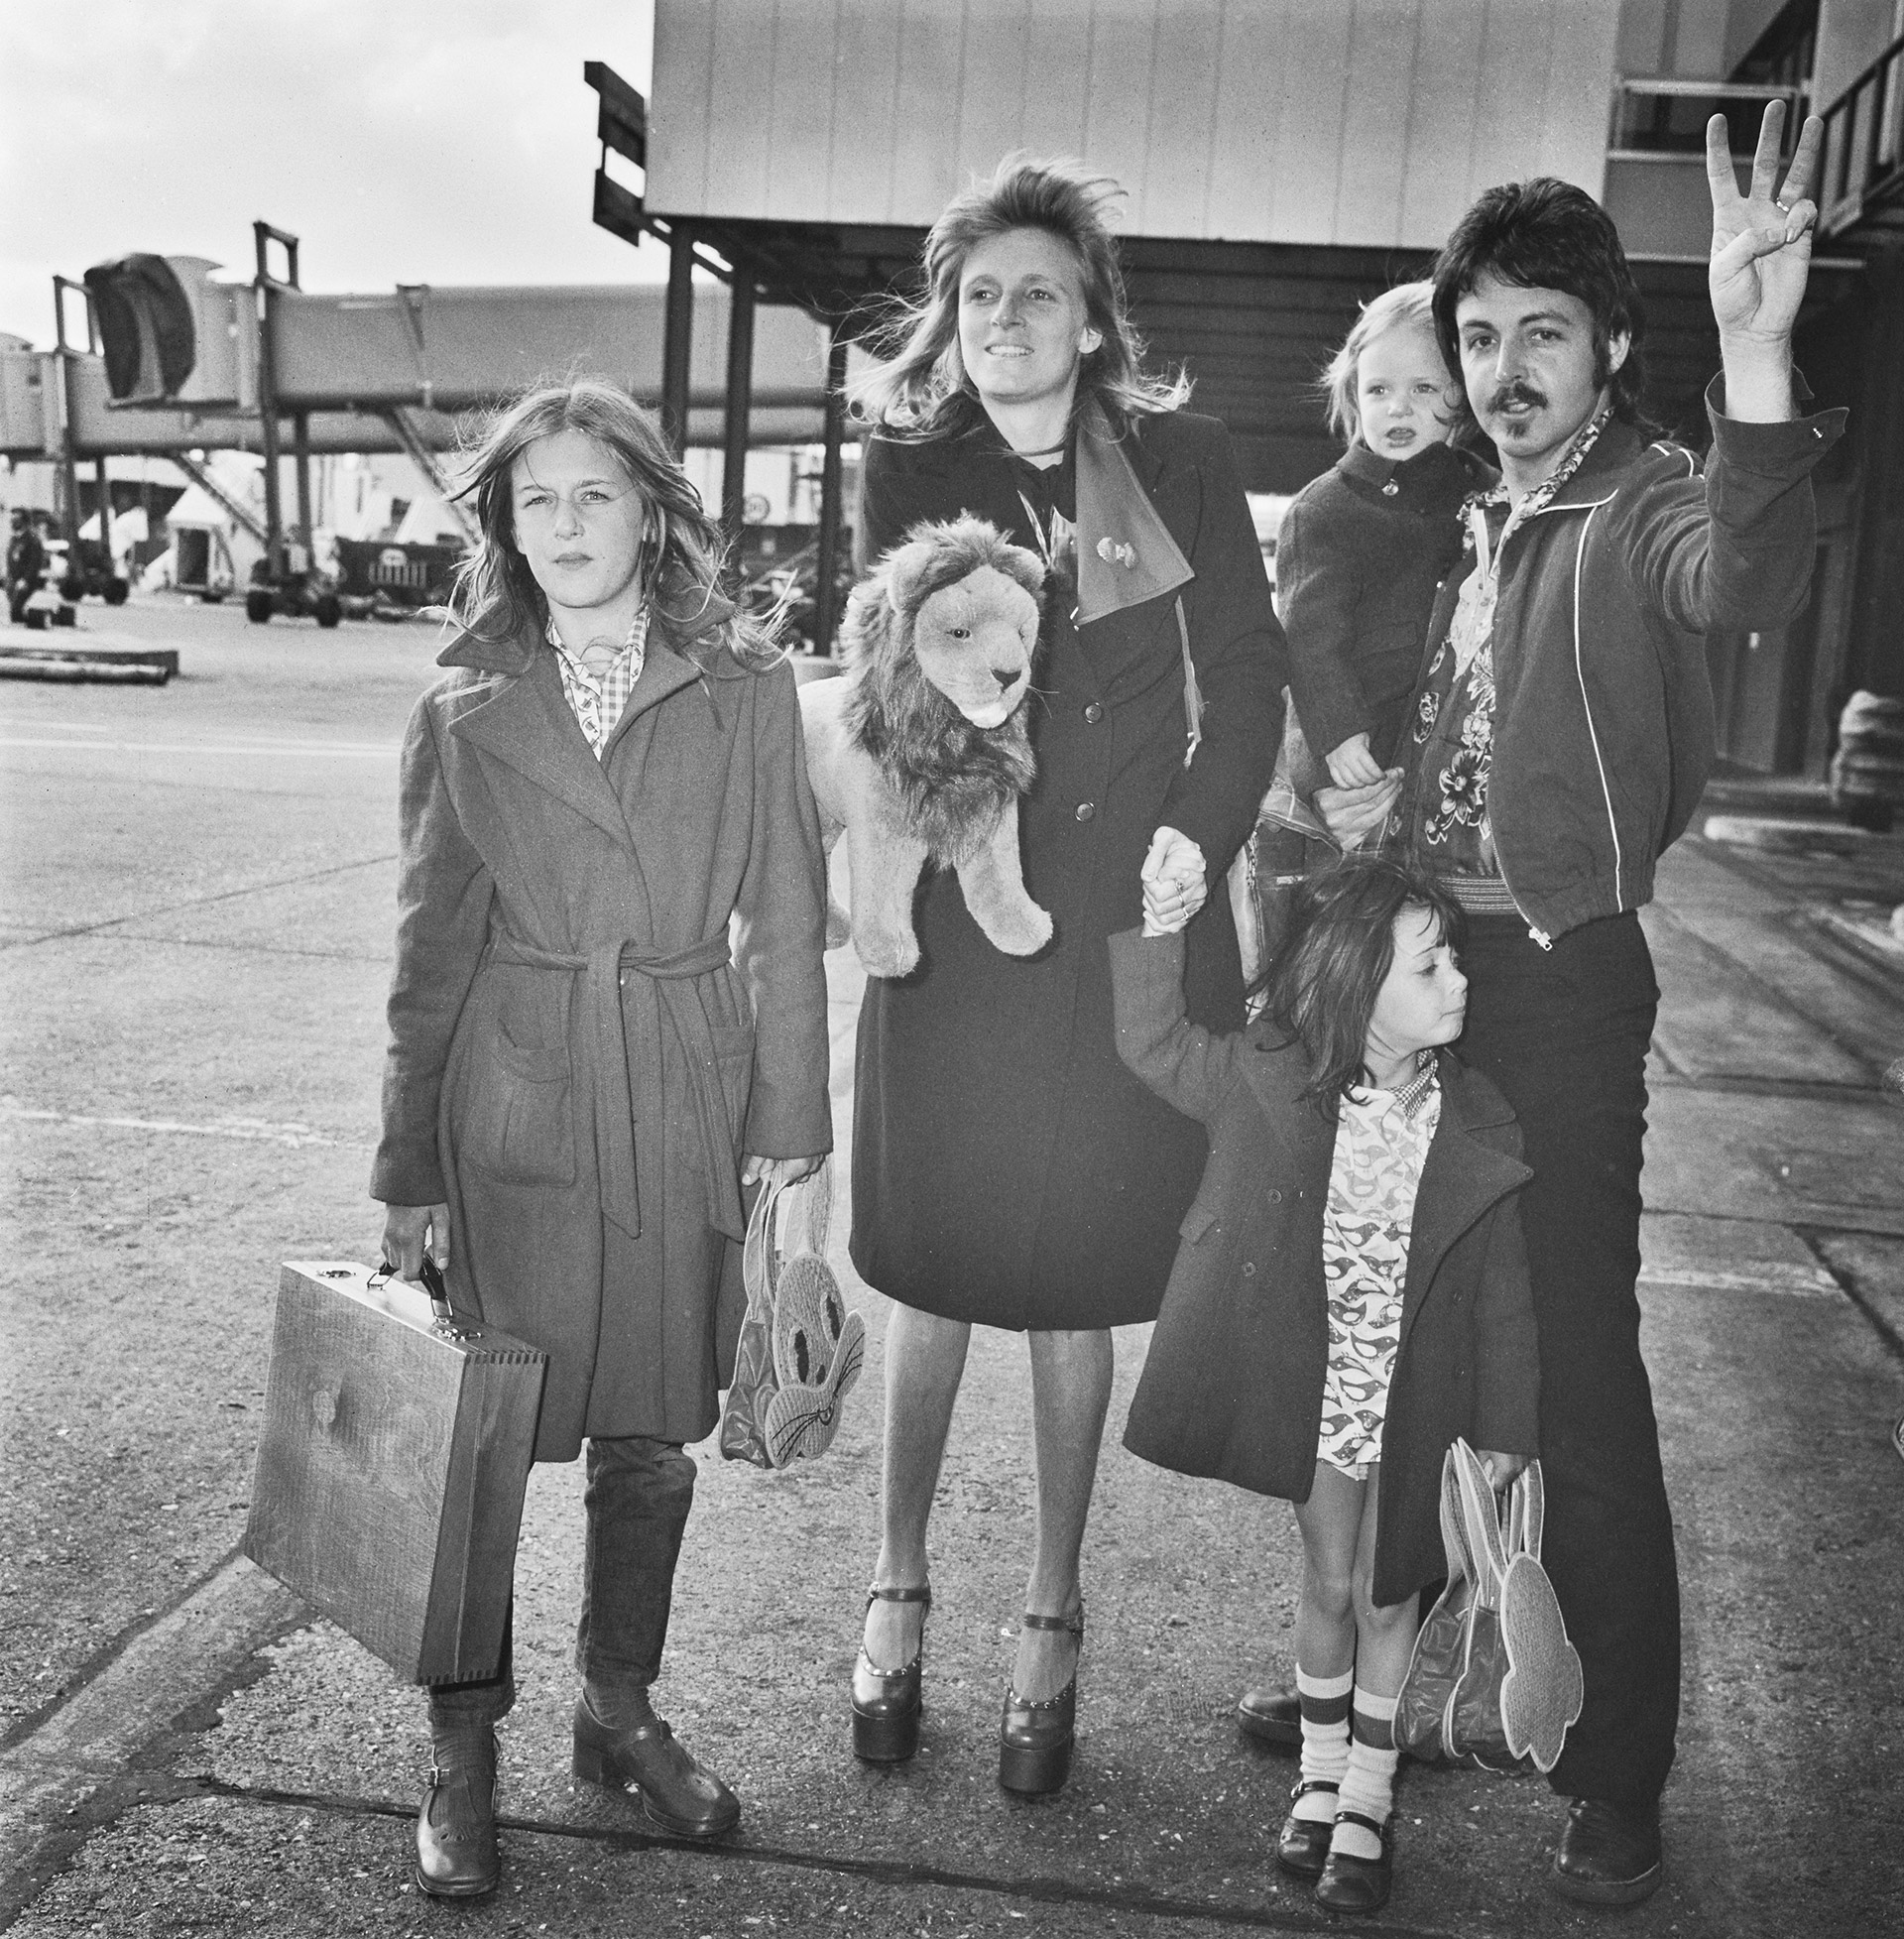 Paul y Linda en una gira con Wings en las que viajaban con sus hijos. En la foto las tres hijas del matrimonio: Heather, Stella y Mary (Hulton Archive/Getty Images)